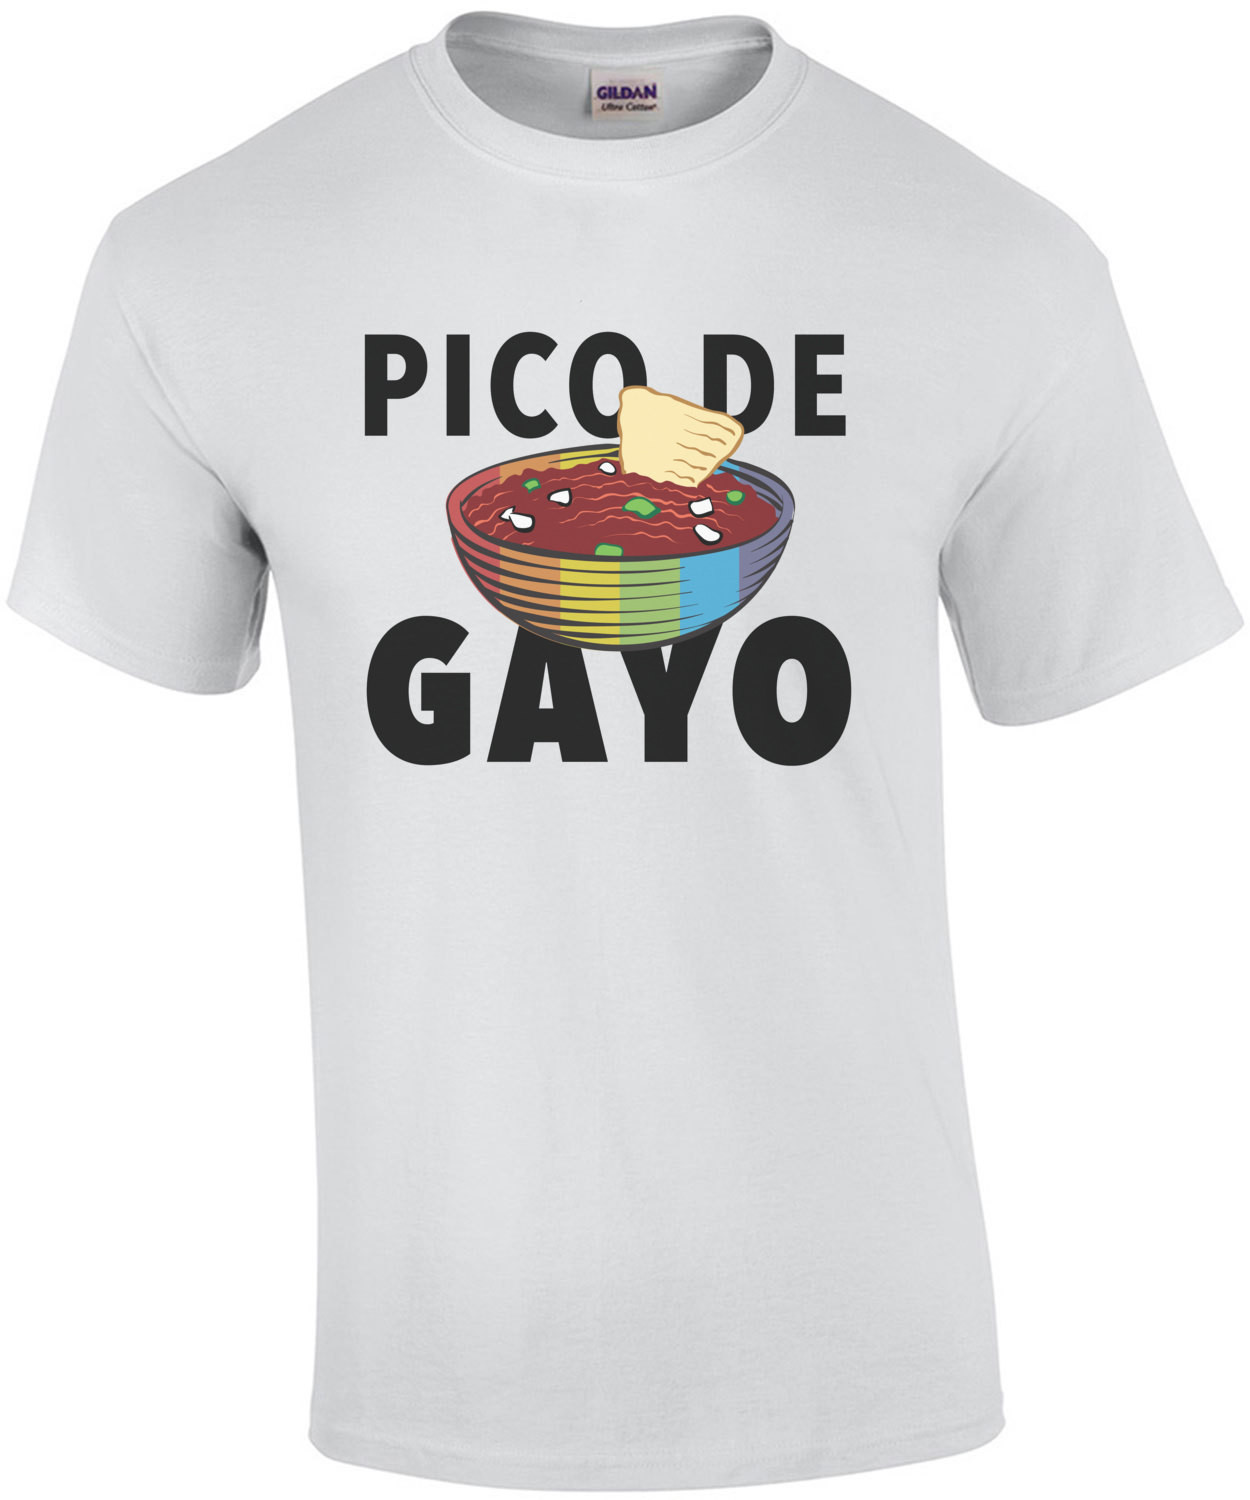 Pico de gayo - Gay Pride T-Shirt